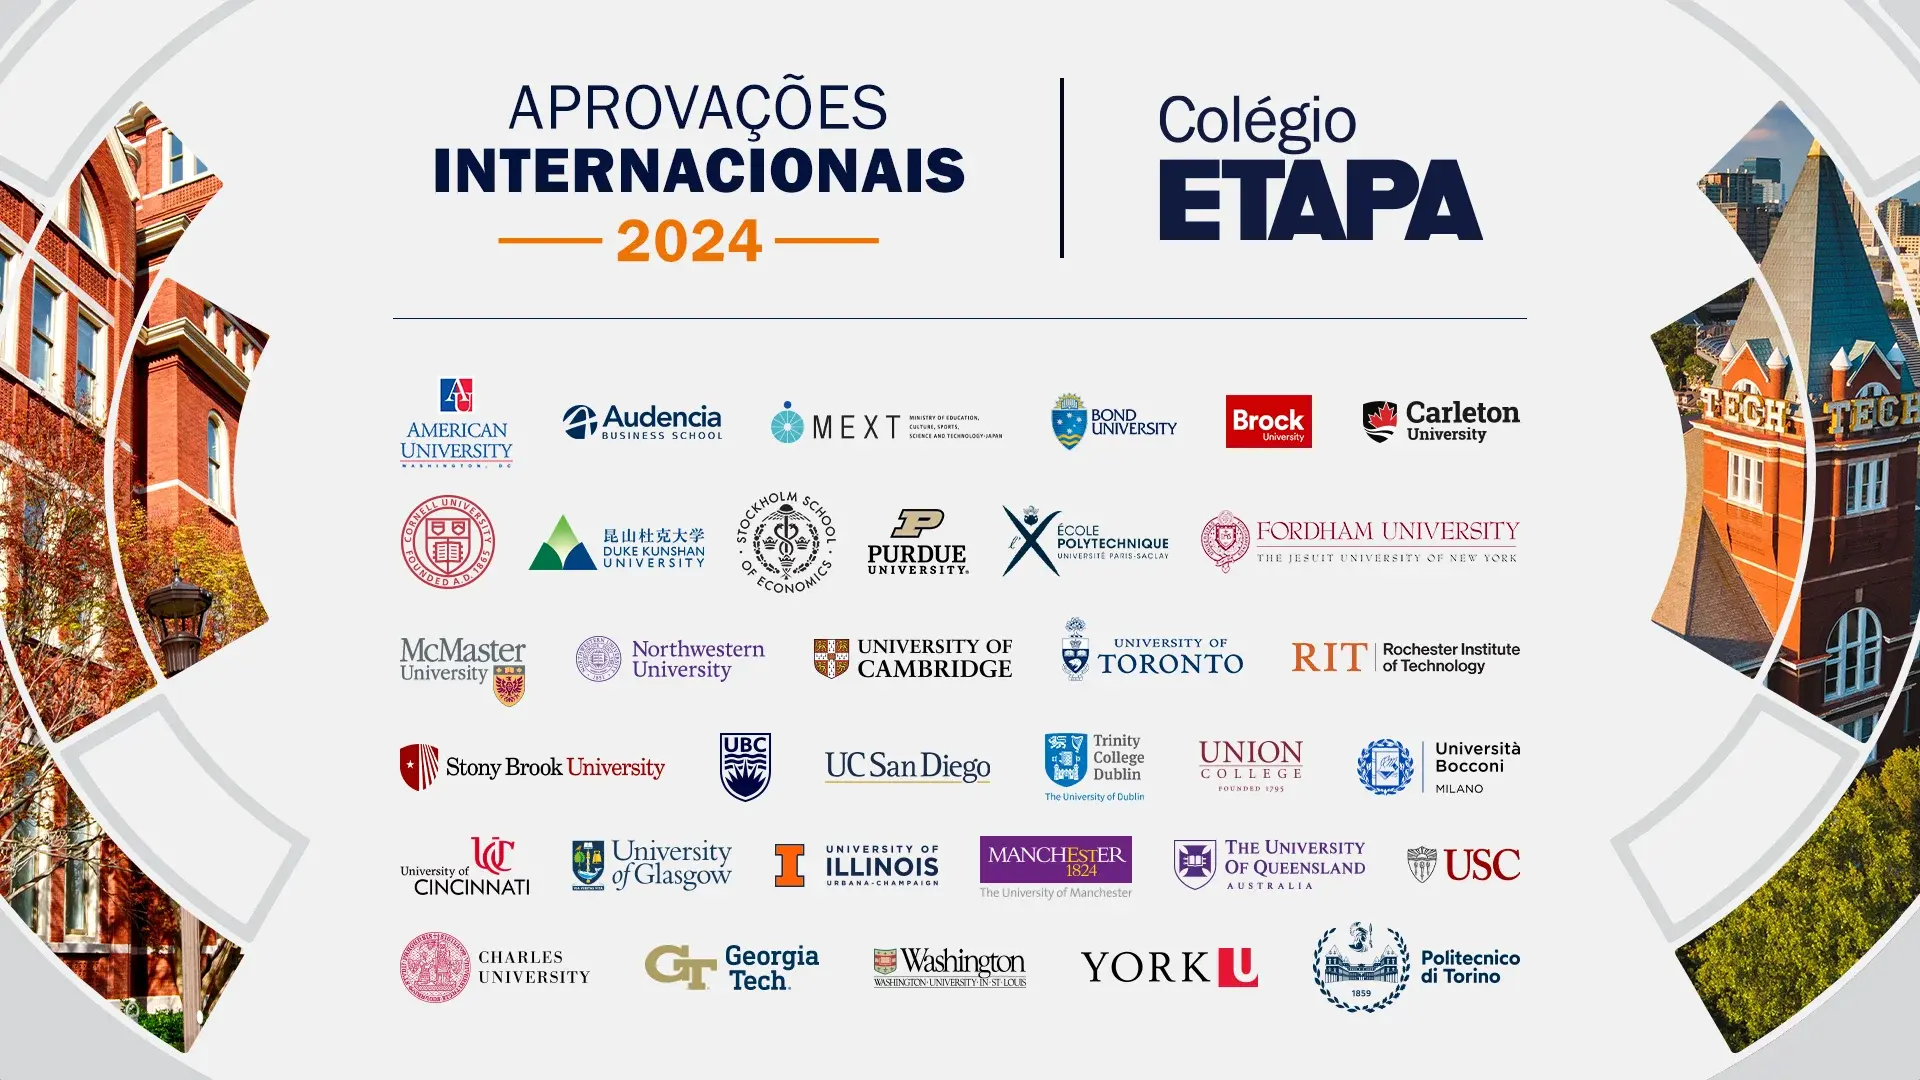 Conheça as aprovações internacionais dos alunos do Colégio Etapa que foram destaque em 2024. 